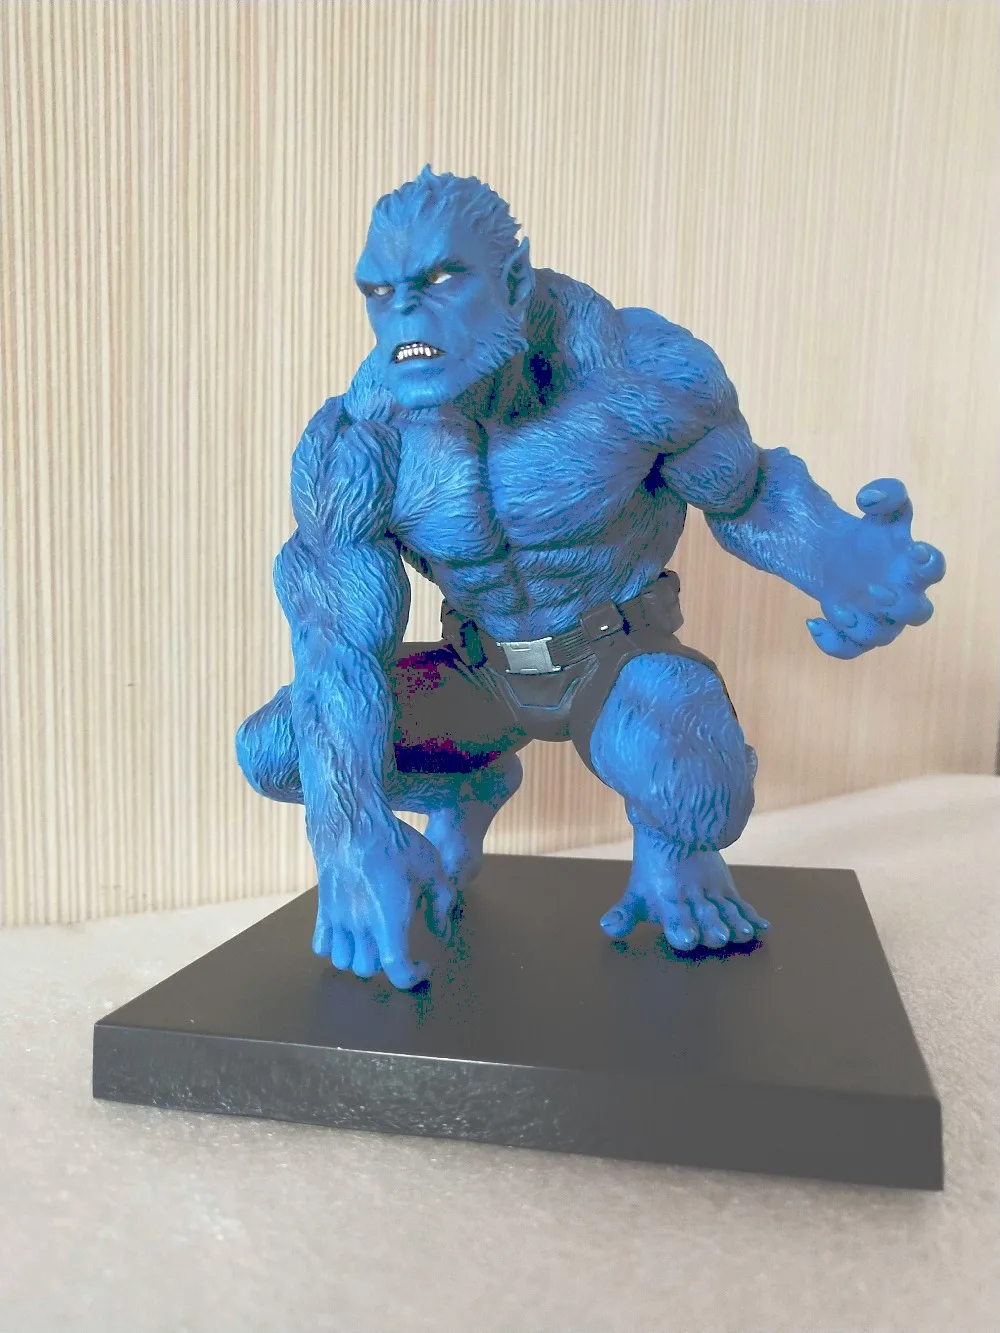 Marvel Artfx Kotobukiya X-MEN зверь свободная фигурка игрушка Brinquedos figuals Коллекция Модель подарок